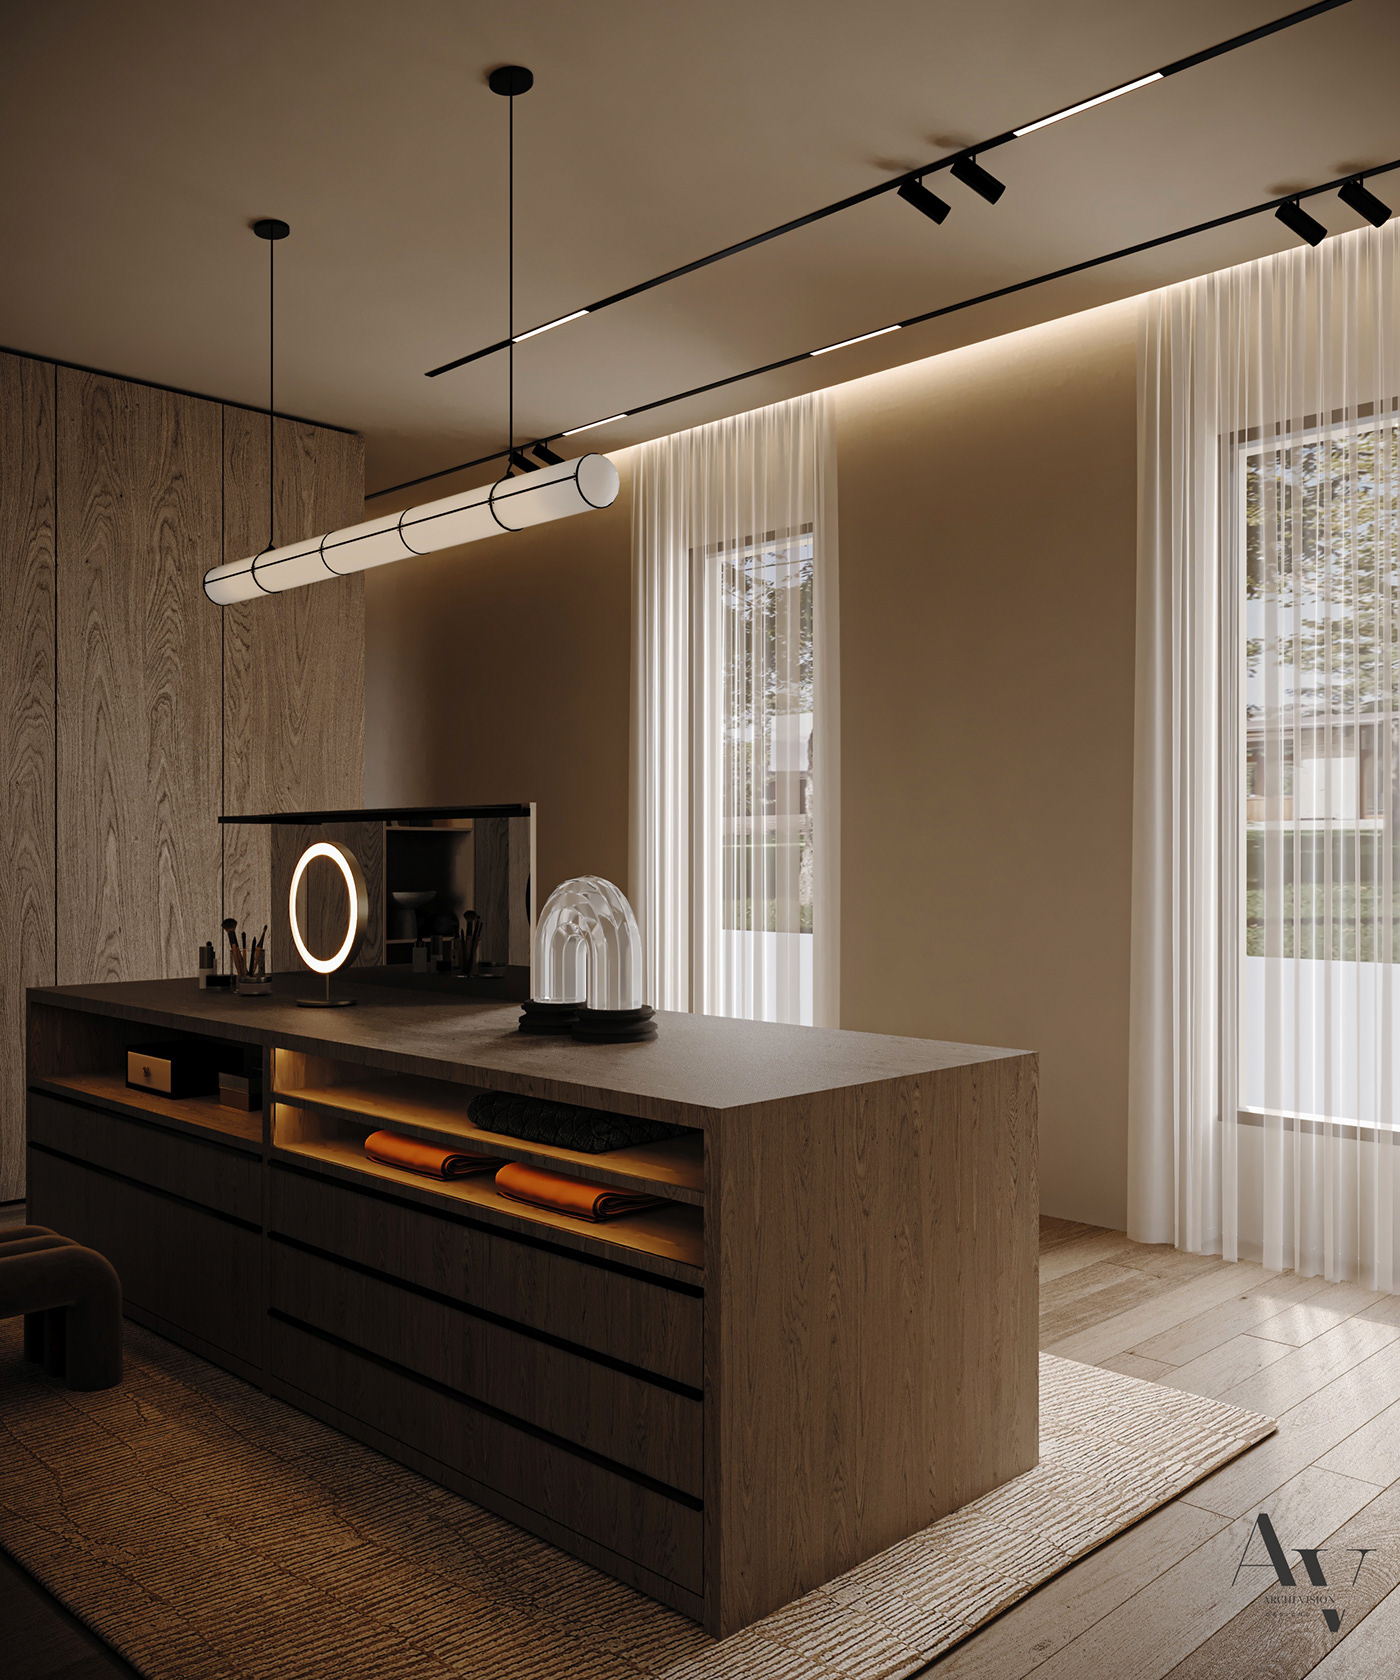 indoor architecture interior design  Render visualization 3D modern 3ds max corona archviz